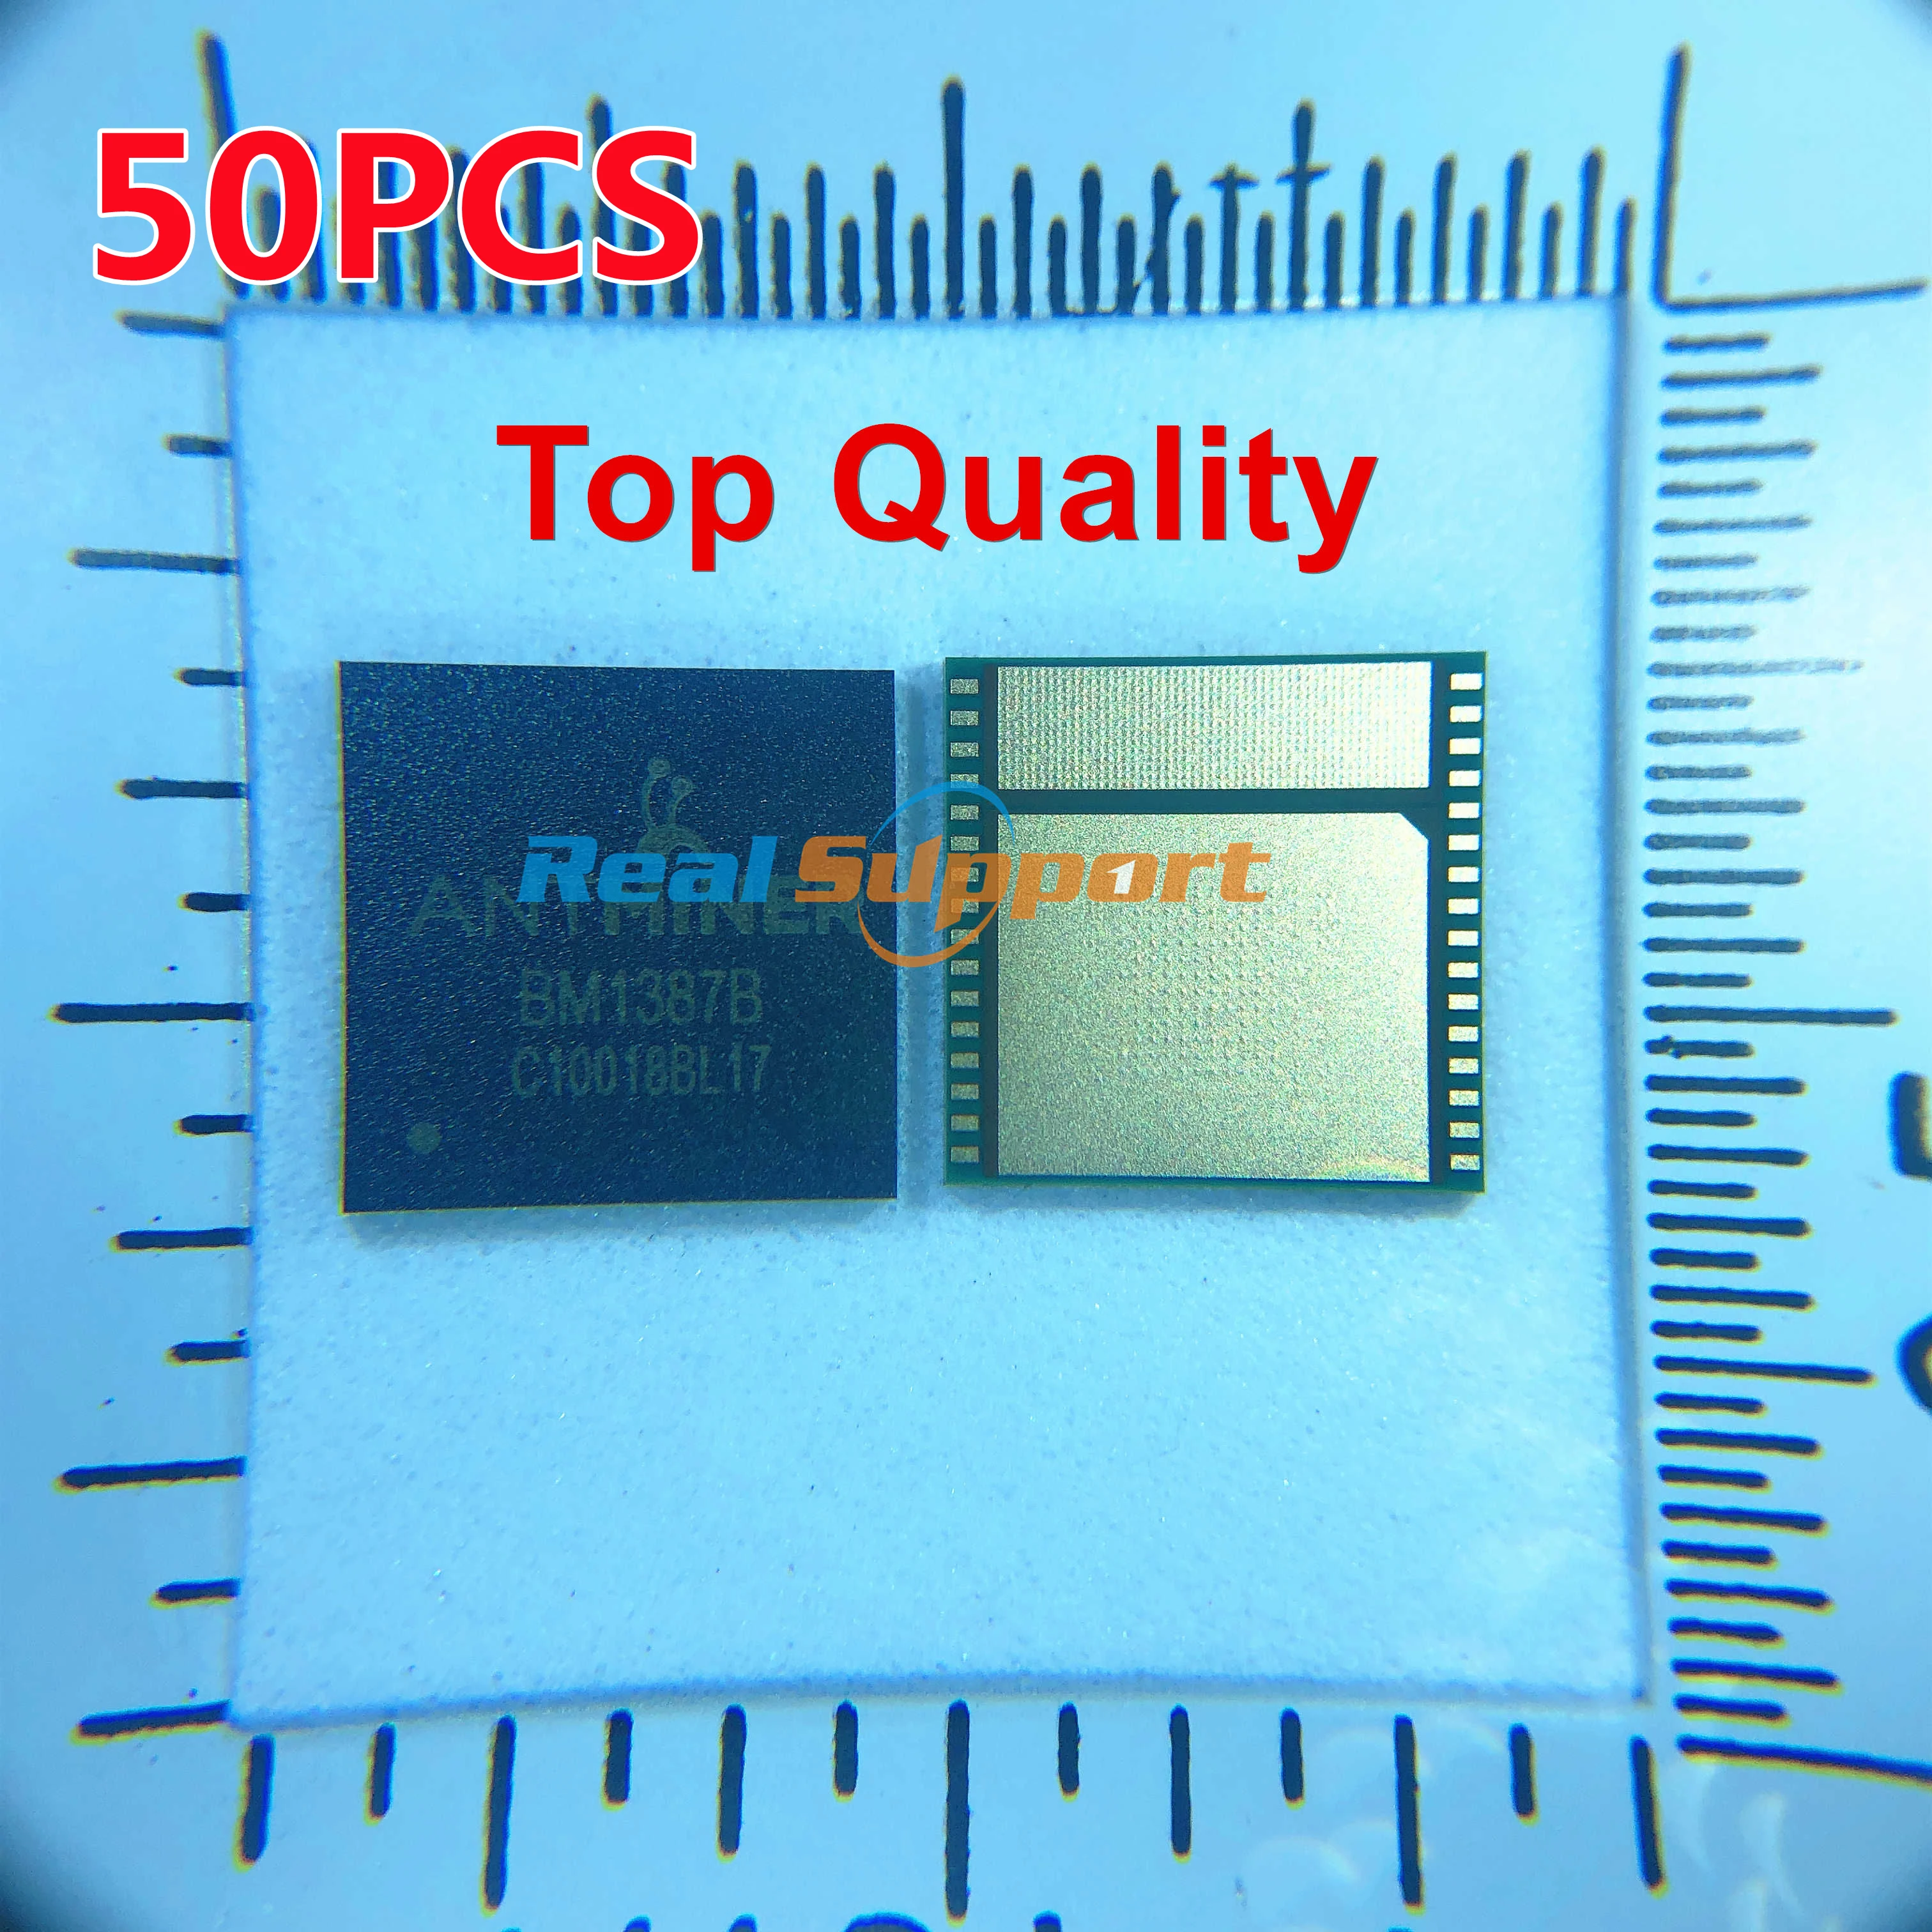 50 шт. чипы BM1387 BM1387B для майнинга биткоинов S9 S9i T9 + чип hash board руководство по ремонту - Фото №1